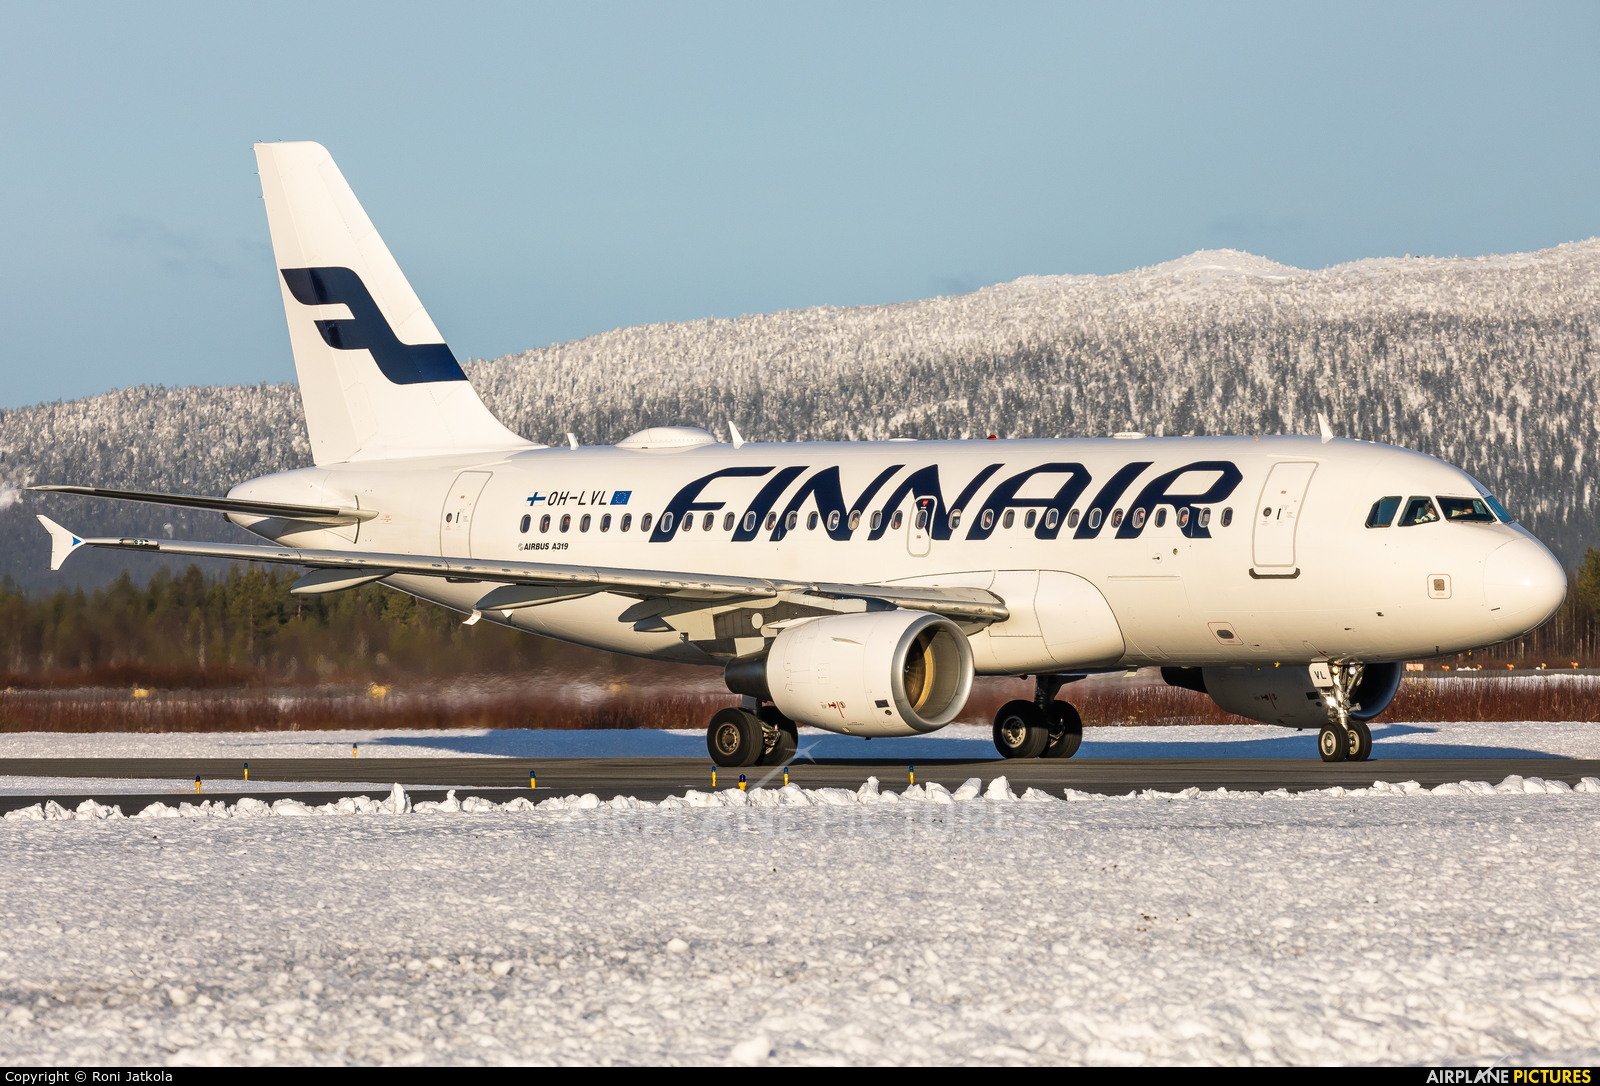 Finnair OH-LVL aircraft at Kittilä